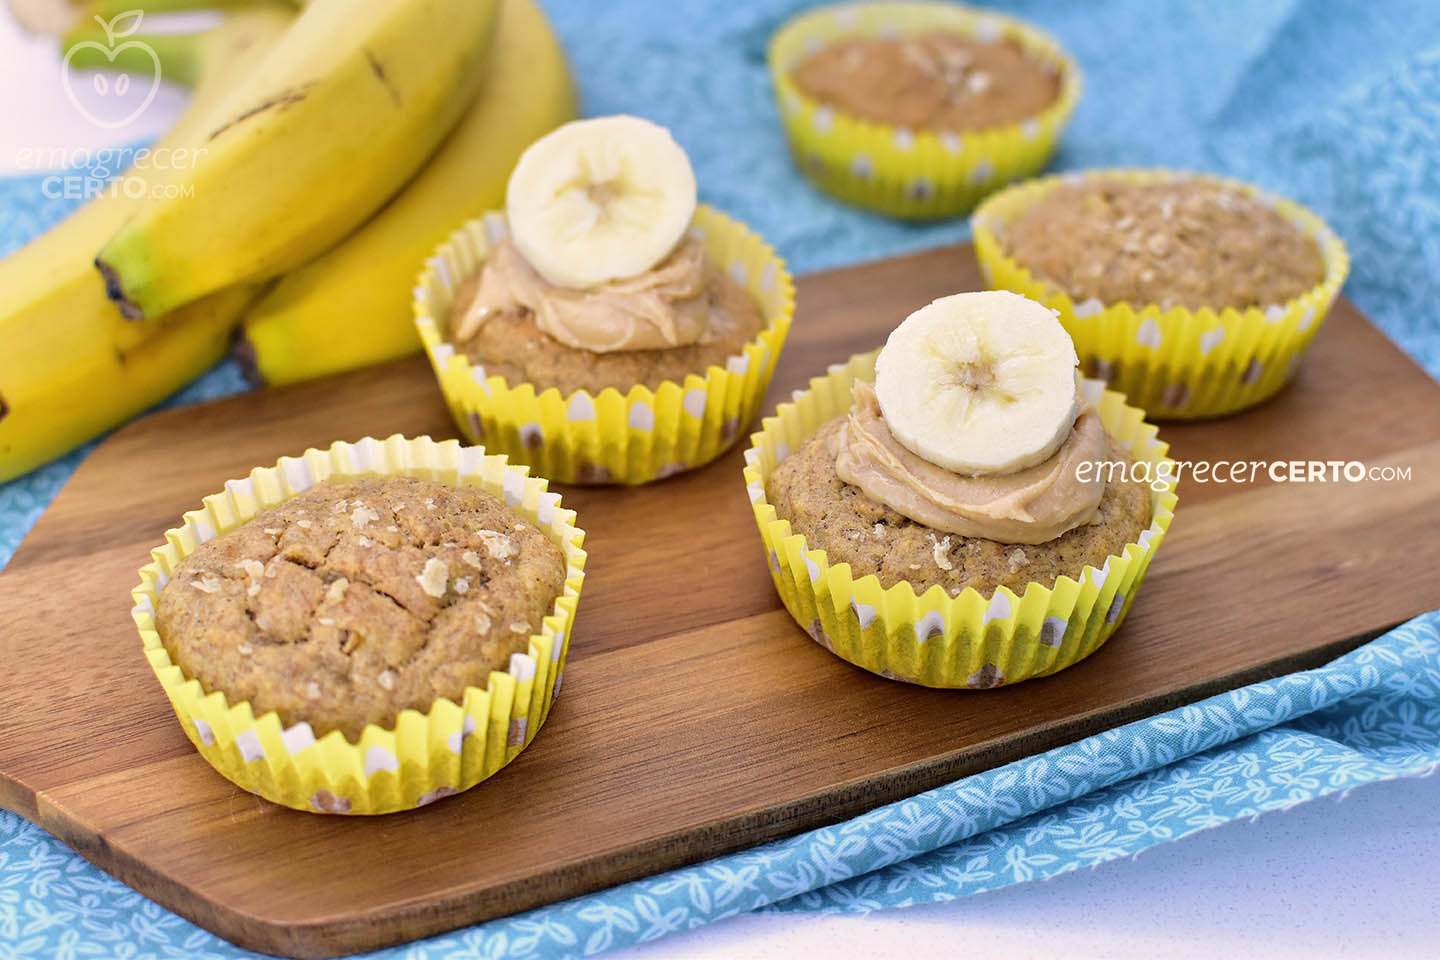 Muffim de banana com especiarias | Blog Emagrecer Certo #receitasaudavel #muffindebanana